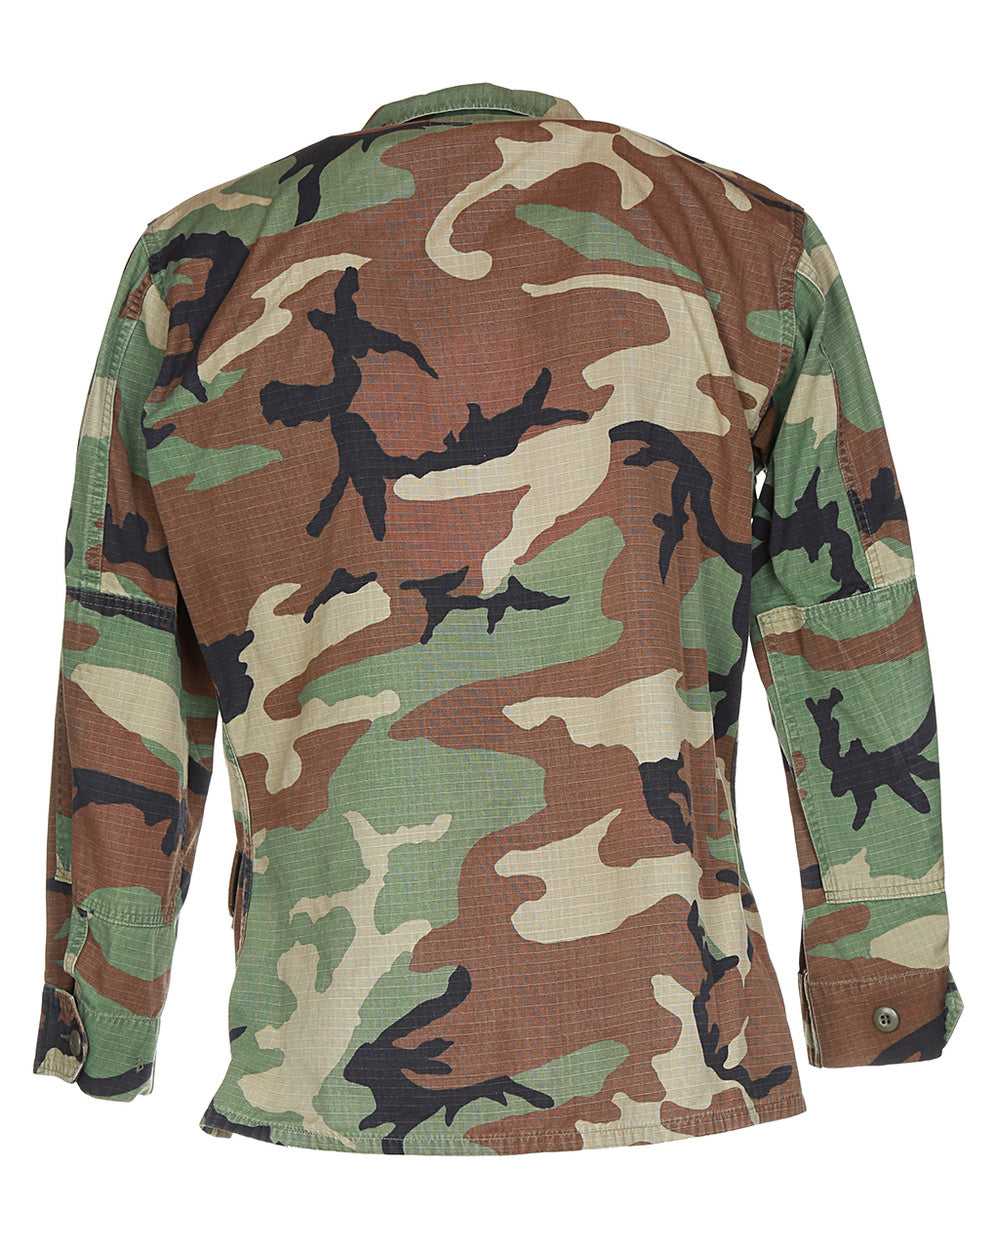 80s Marine Corp Camouflage Shirt - M